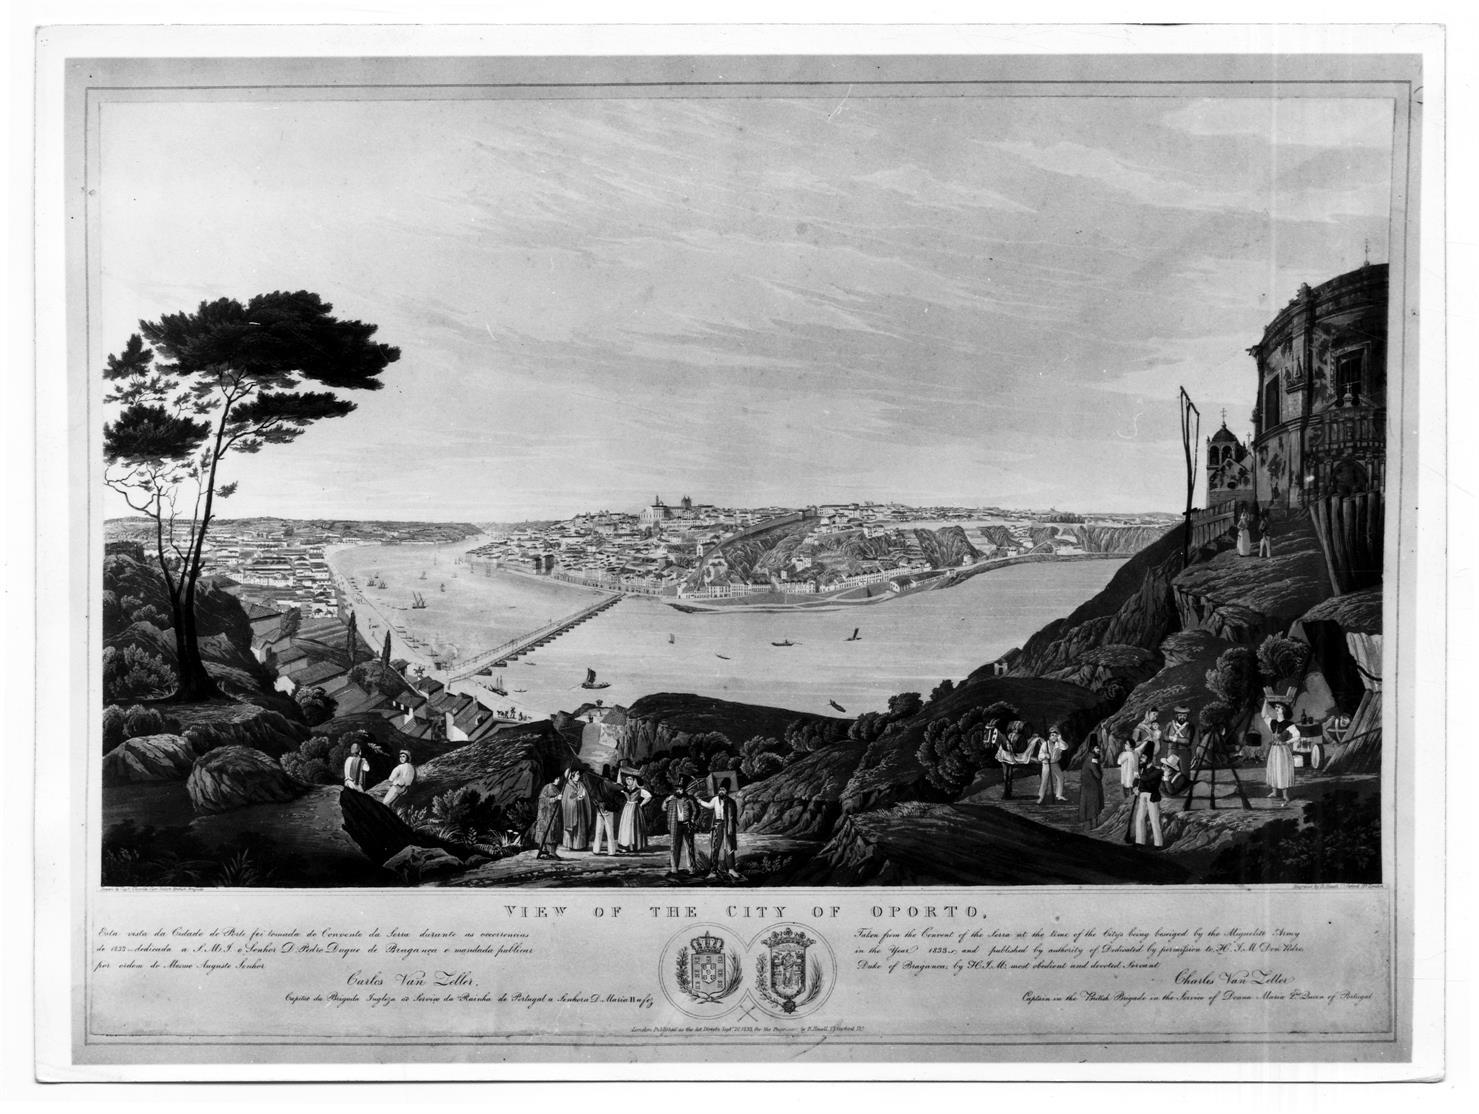 O cerco do Porto : exposição comemorativa do 150º aniversário : view of the City of Oporto